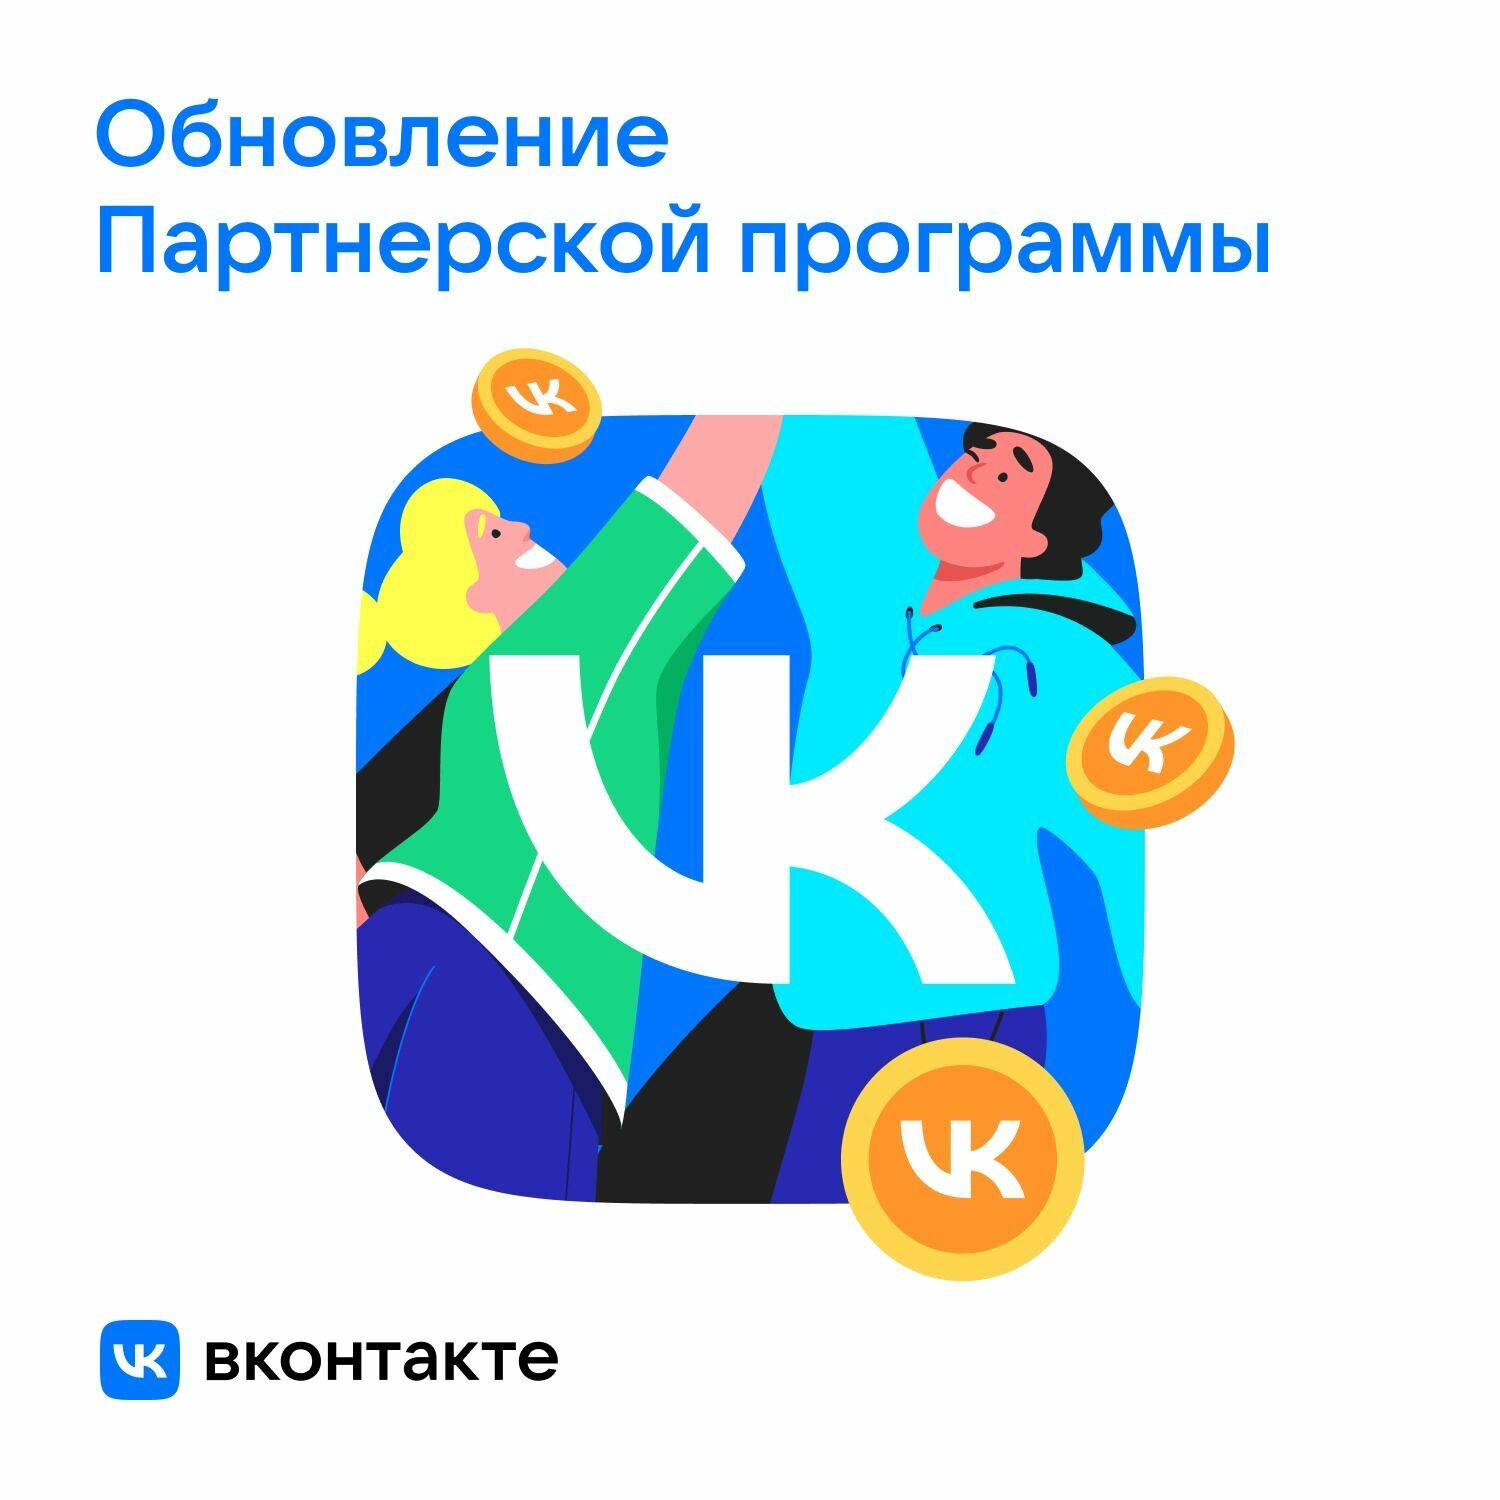 ВКонтакте обновила партнёрскую программу — она стала доступнее для растущих авторов